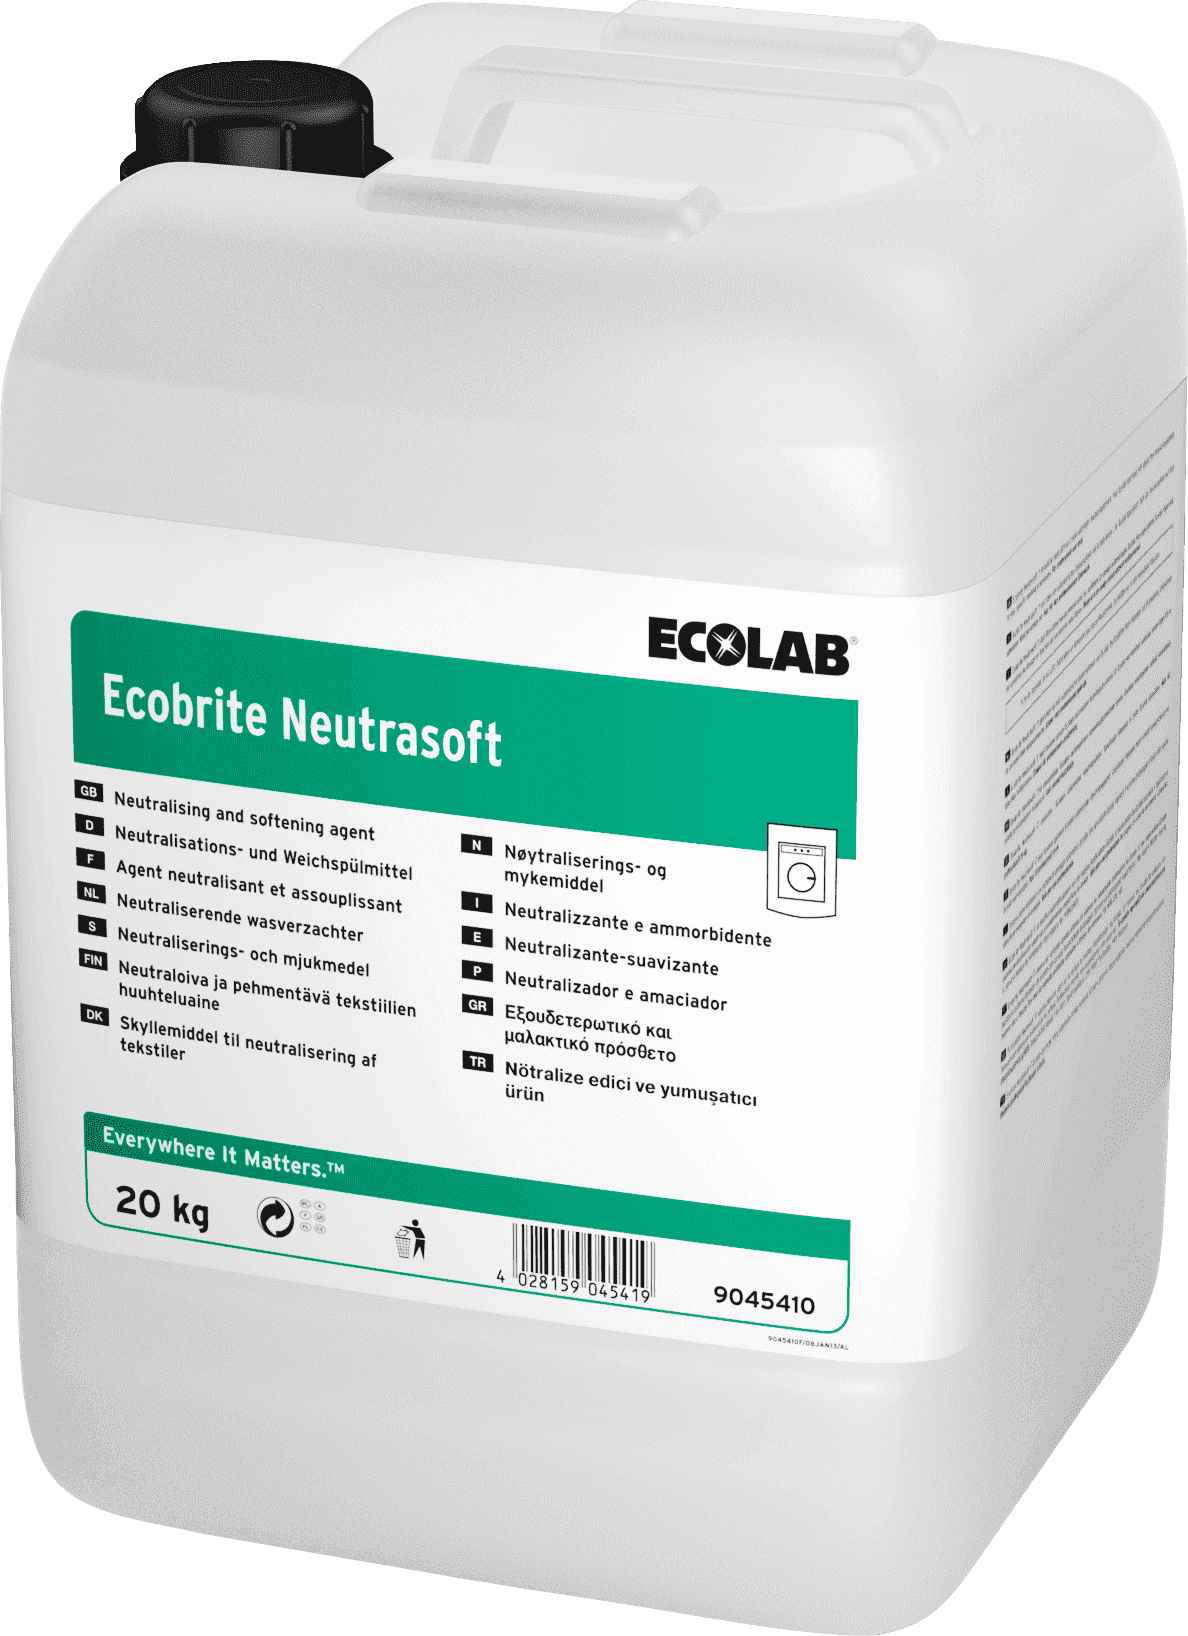 Ecolab Ecobrite Neutrasoft жидкий профессиональный кондиционер-ополаскиватель, Клингард